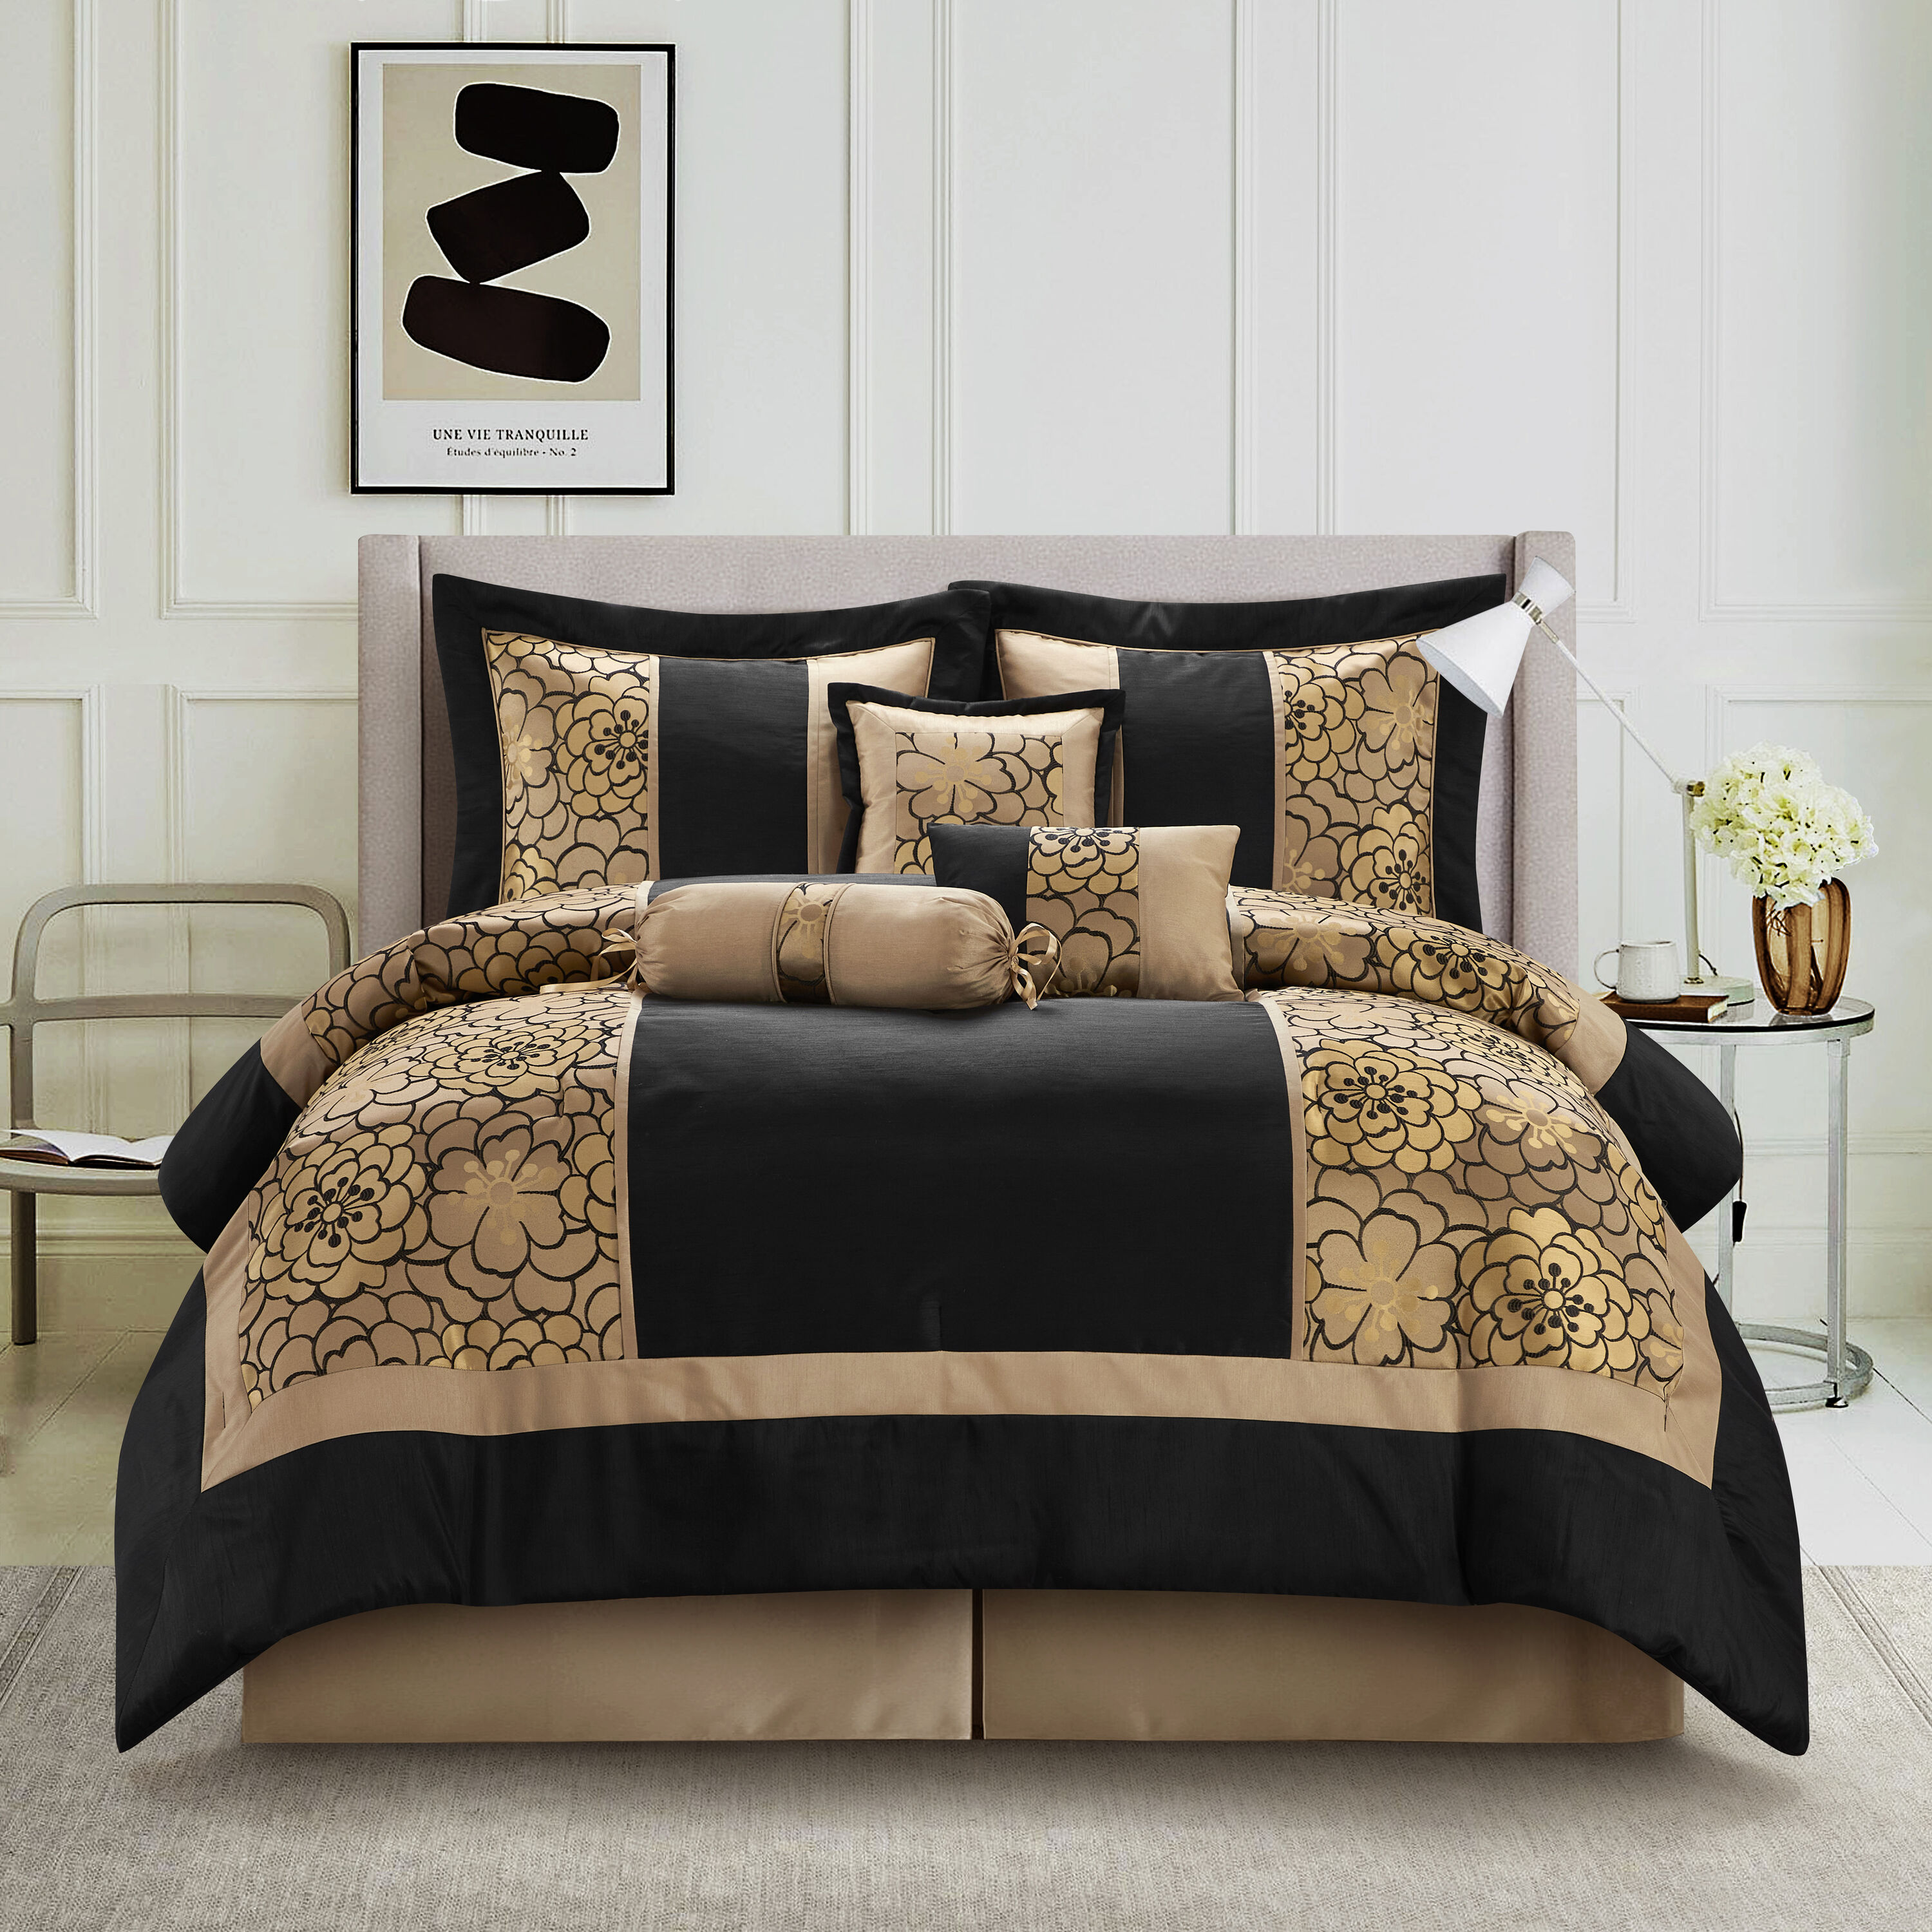 Buy Louis Vuitton Luxury Brands 23 Bedding Set Bed Sets, Bedroom